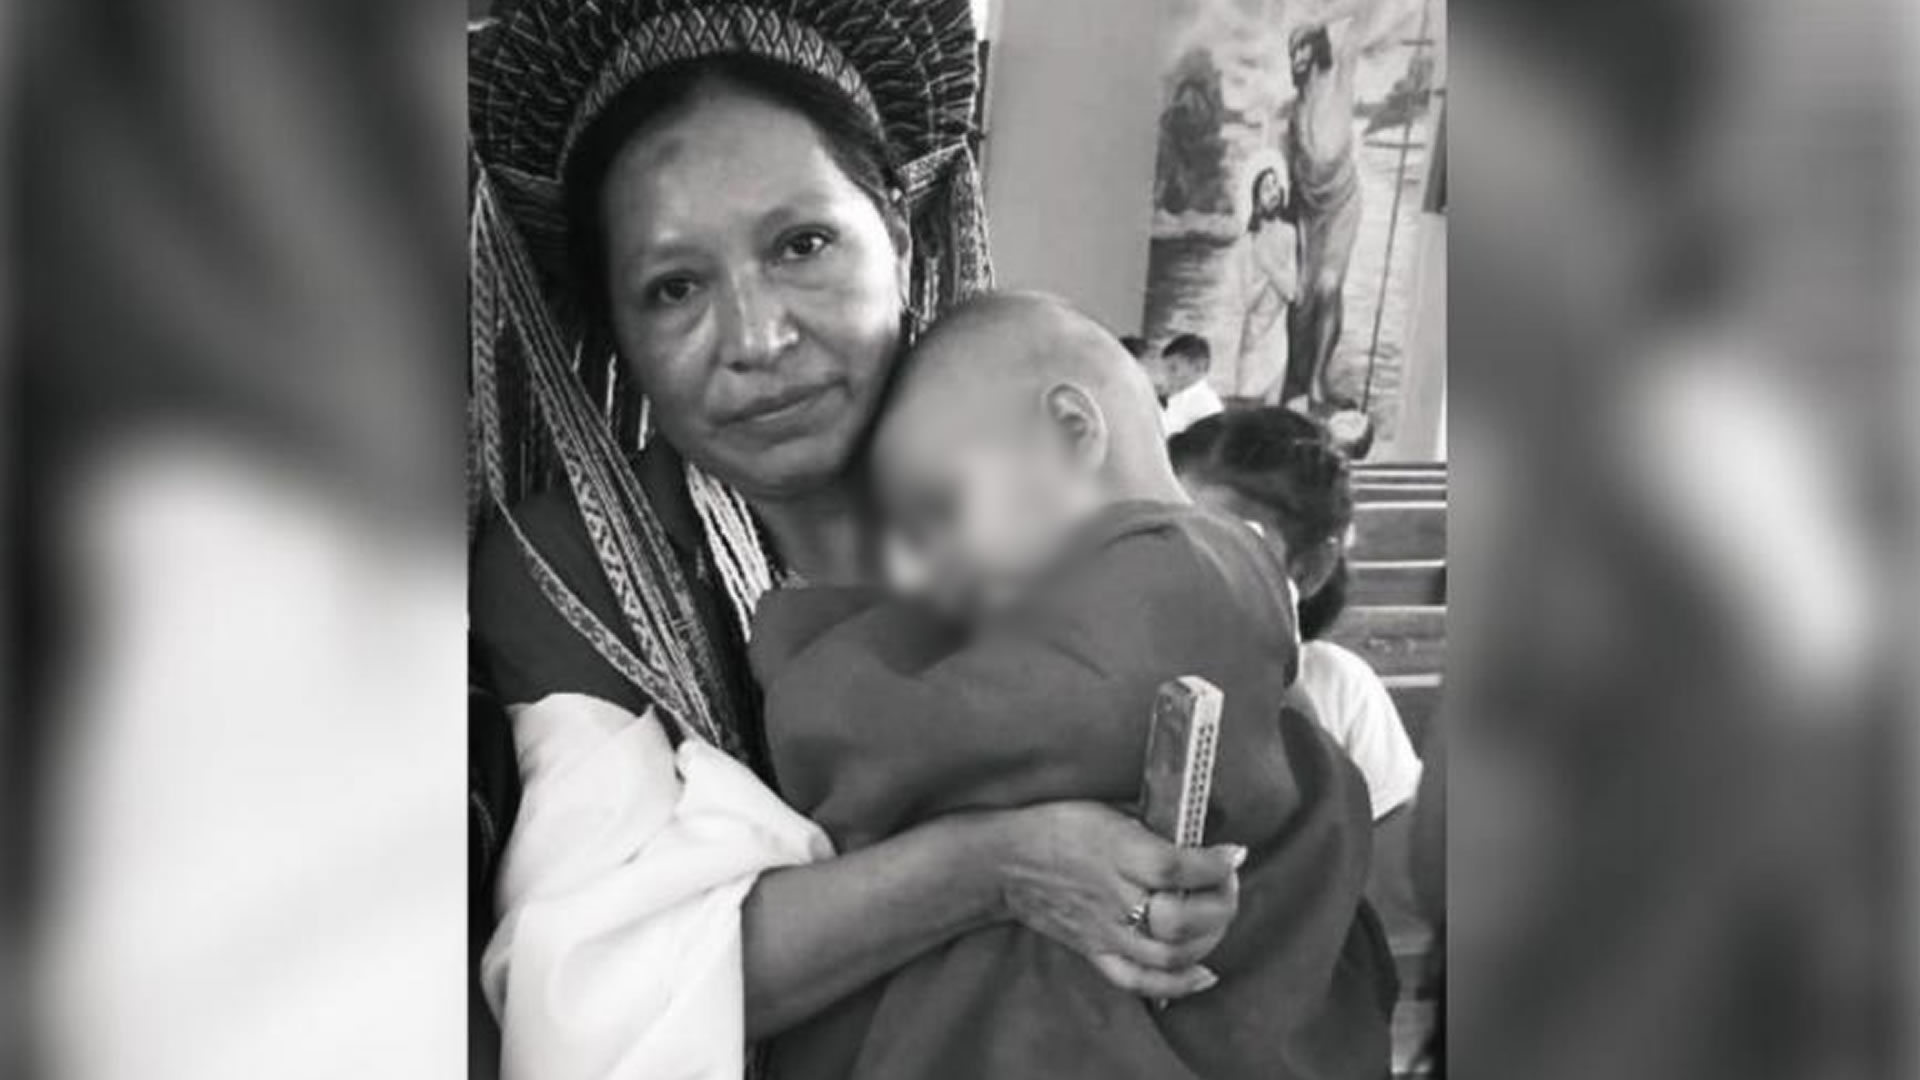 Reportar en la asesinato de la líder indígena María Bernarda Juajibioy en Putumayo. @Felicianovalen